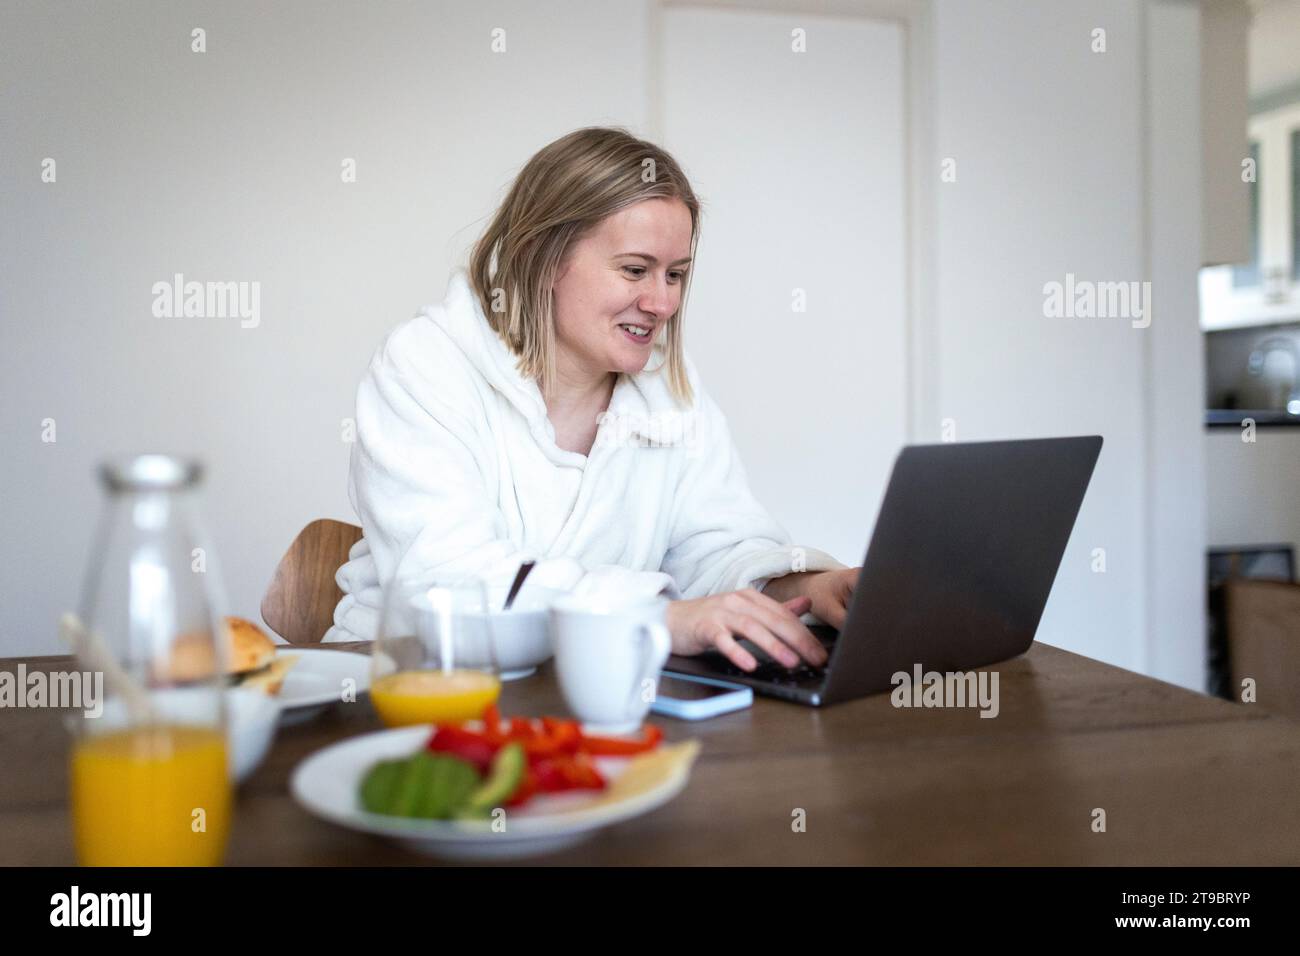 Lächelnde blonde Frau, die am Esstisch einen Laptop benutzt Stockfoto